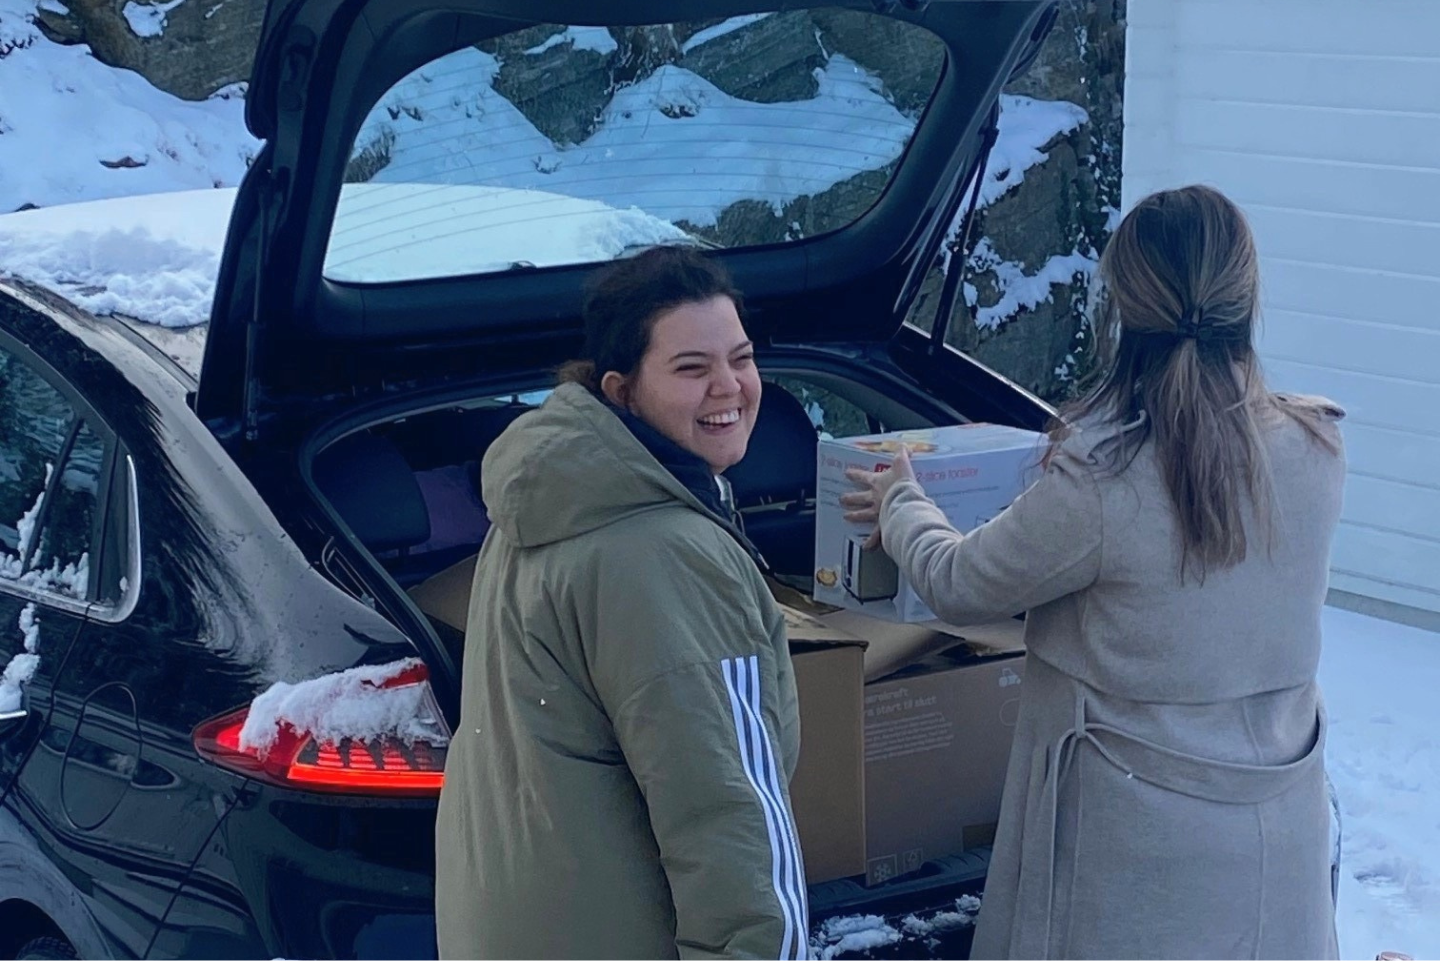 Tamarin, en ung kvinne, foran bagasjeluken på en bil sammen med kvinnelig assistent. Tamarin smiler mot kamera og assistenten løfter en flytteeske.